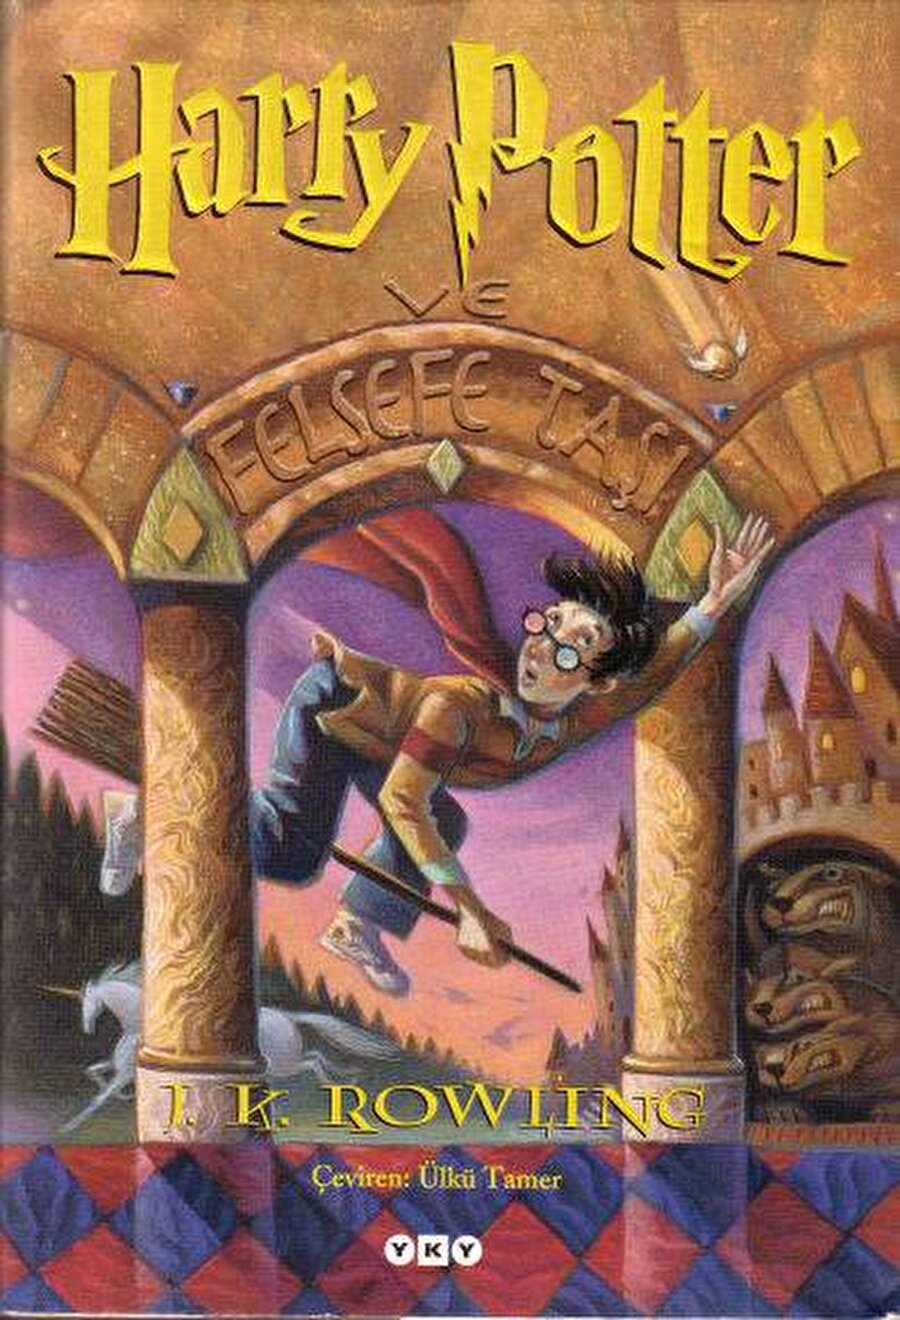 Harry Potter ve Felsefe Taşı

                                    
                                    Filmleri de gişe rekorları kıran Harry Potter serisinin ilk kitabıdır. J.K Rowling tarafından yazılan bu kitap okuyucularını büyücülerin dünyasına sokar. Üç başlı köpeklerin, sihirli asaların, görünmezlik pelerinlerinin ve kötü adamların olduğu bu dünya çok sevilmiş olacak ki 1997 yılında yayımlanmasına rağmen tam 107 milyon adet satılmış.

                                
                                